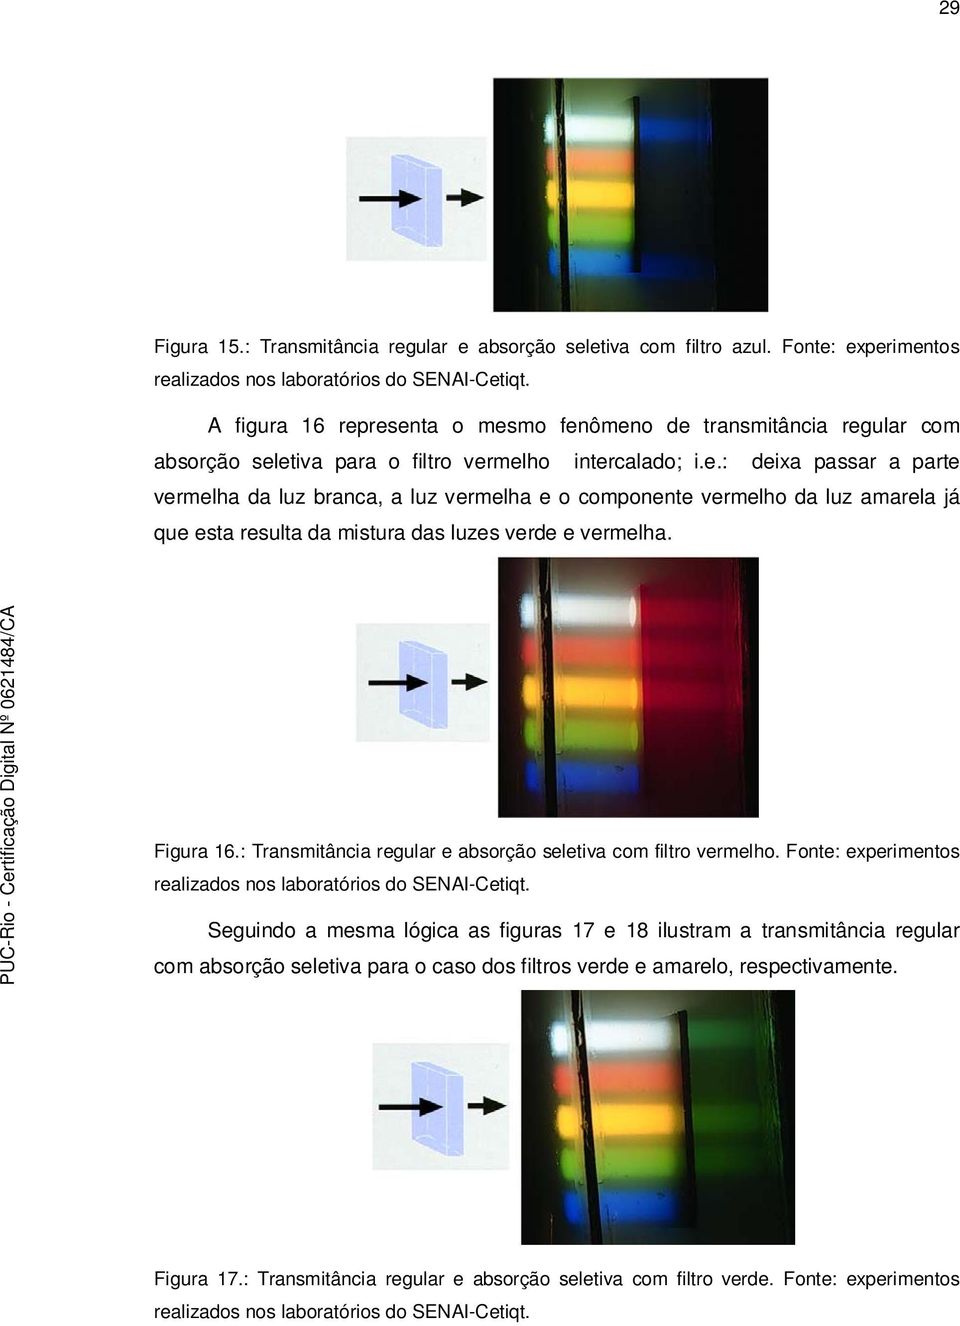 Figura 16.: Transmitância regular e absorção seletiva com filtro vermelho. Fonte: experimentos realizados nos laboratórios do SENAI-Cetiqt.